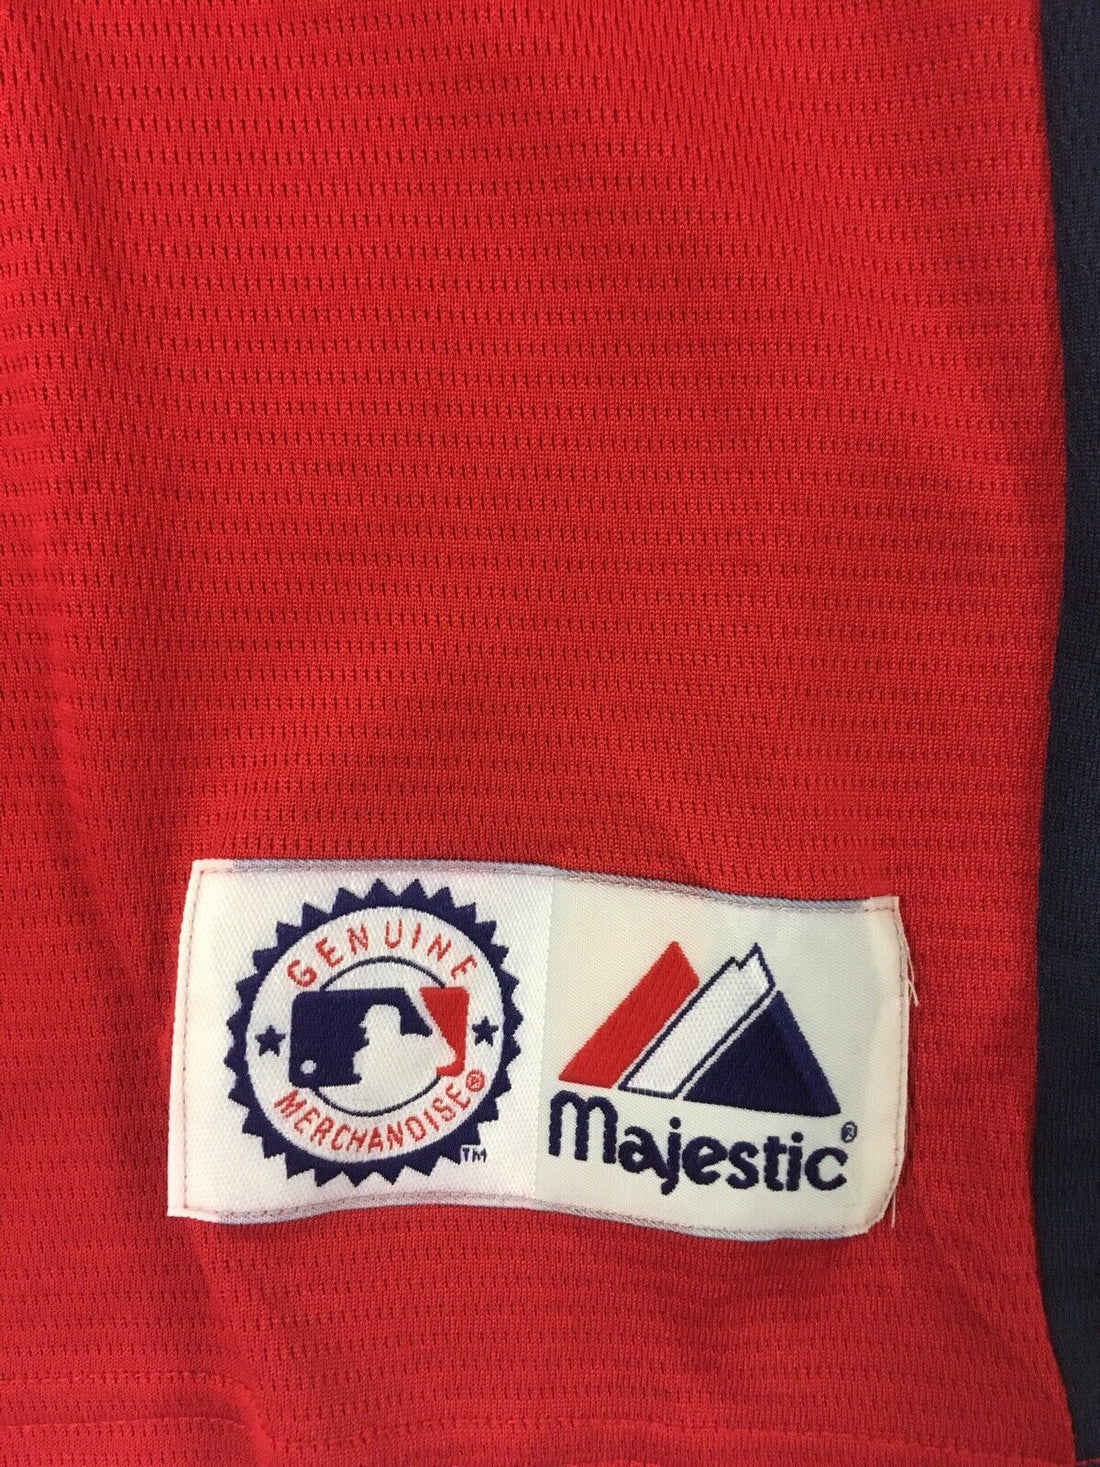 Washington Nationals Majestic Warm Up Jersey Size XL MLB Sewn Stitched